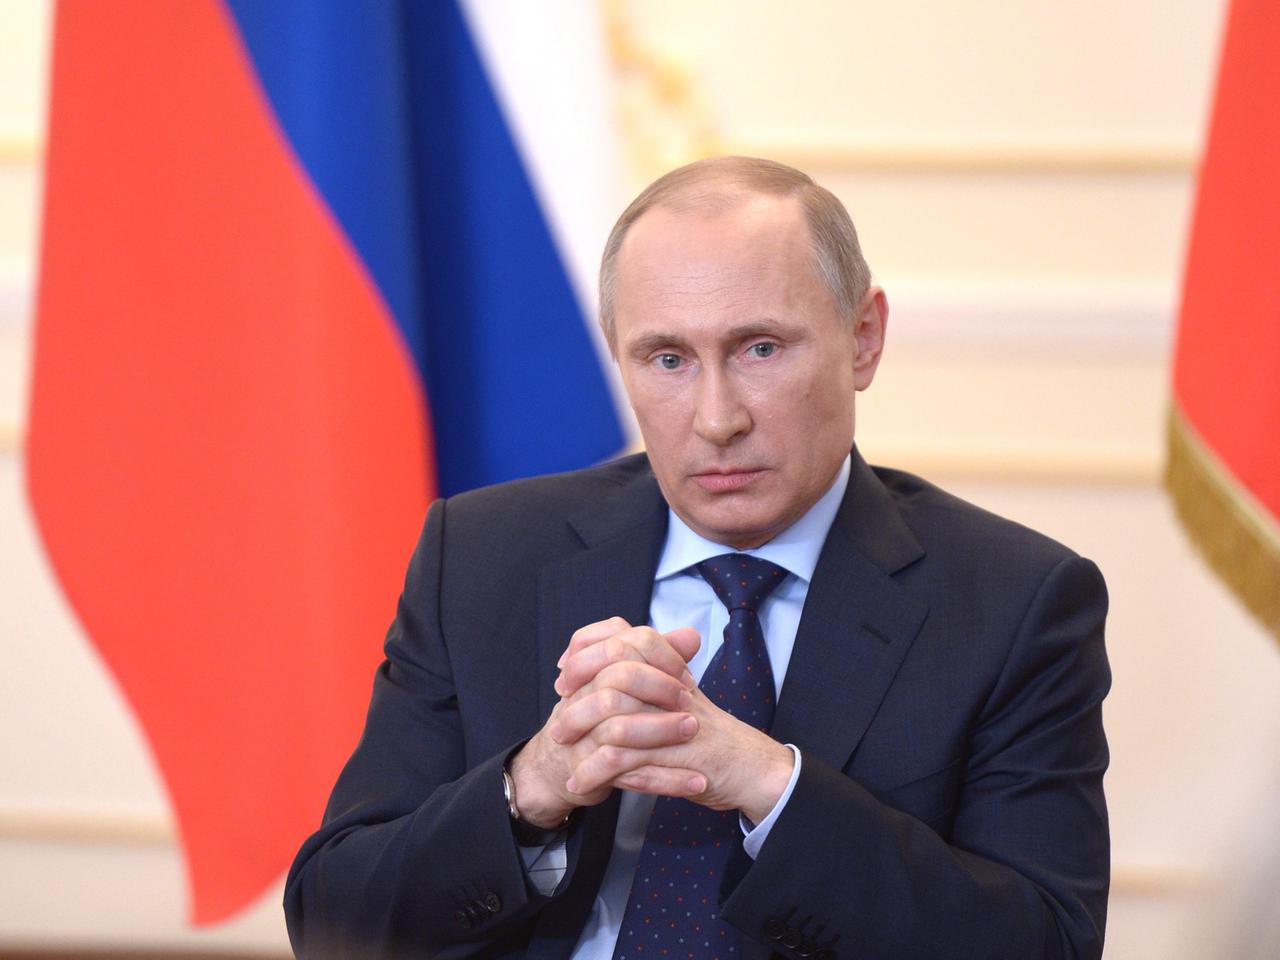 Waldaimir Putin bei einer Pressekonferenz